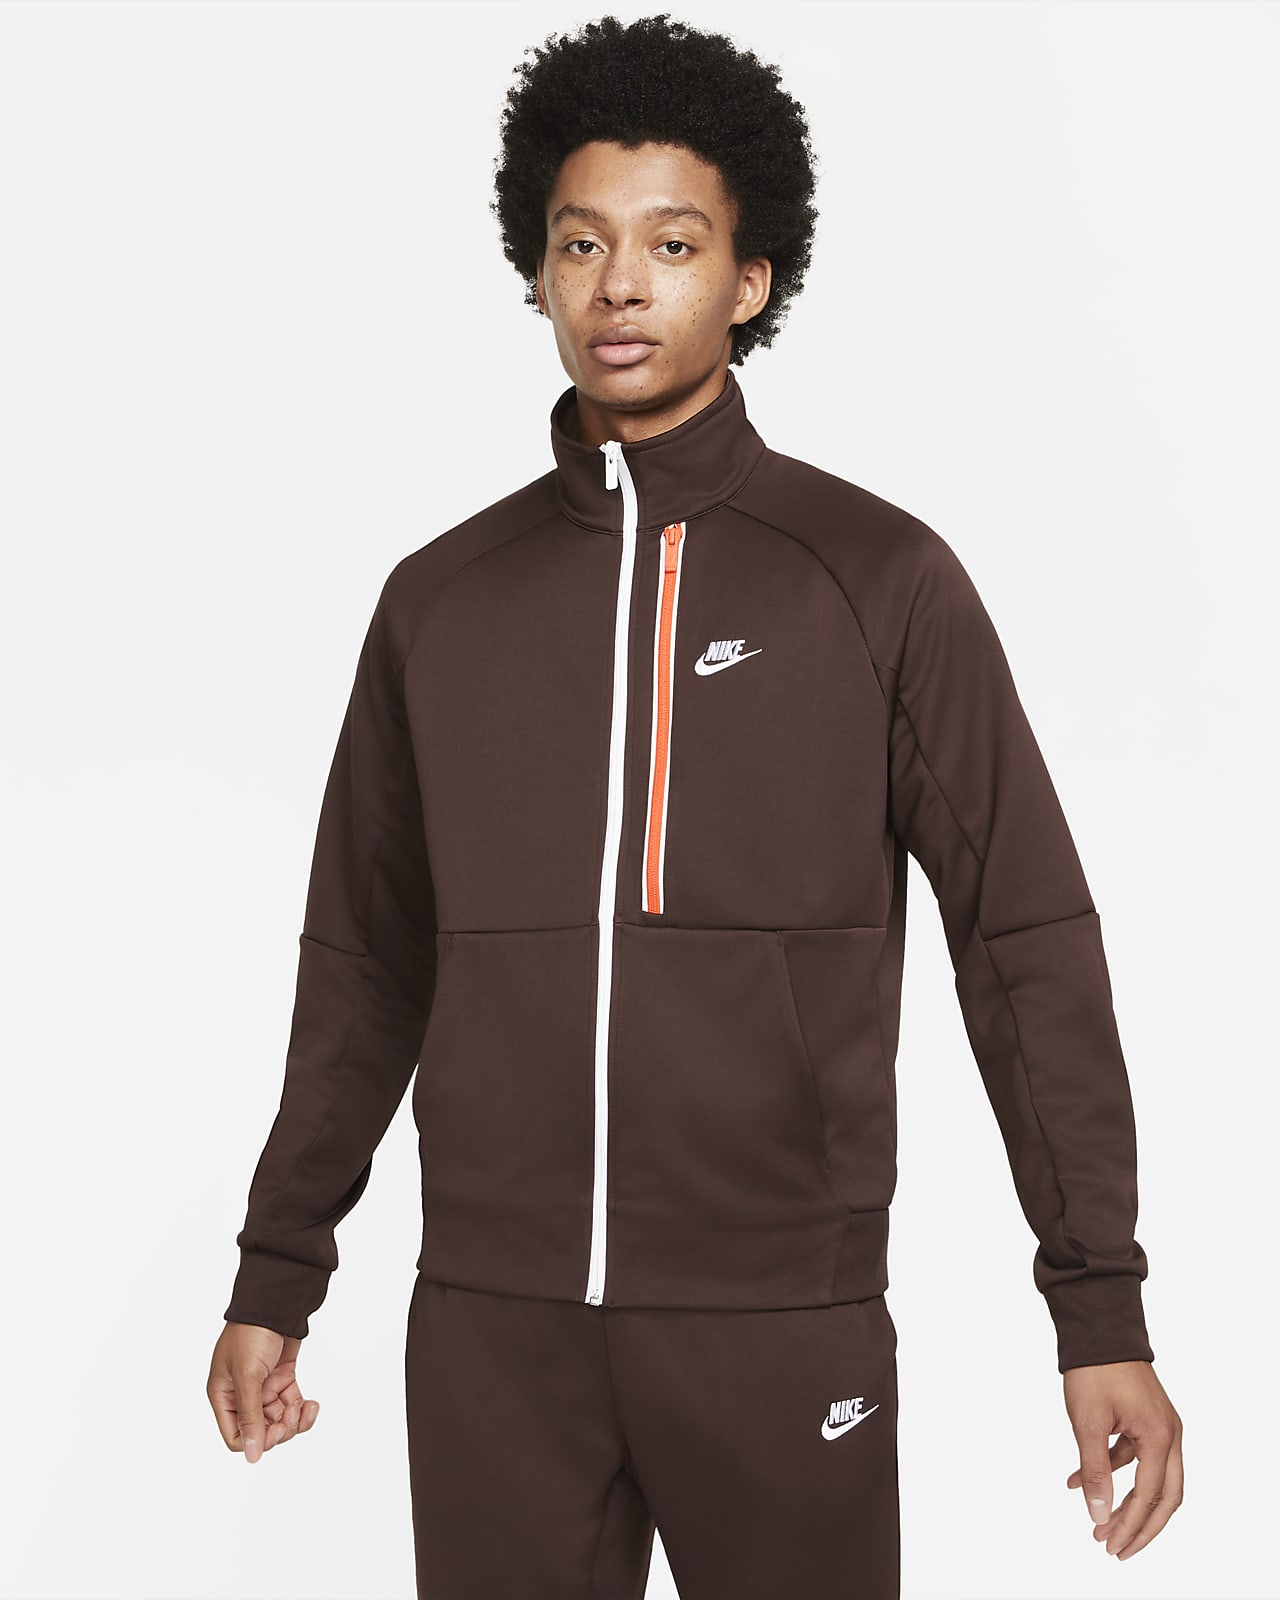 Nike Sportswear Tribute Men's N98 Jacket